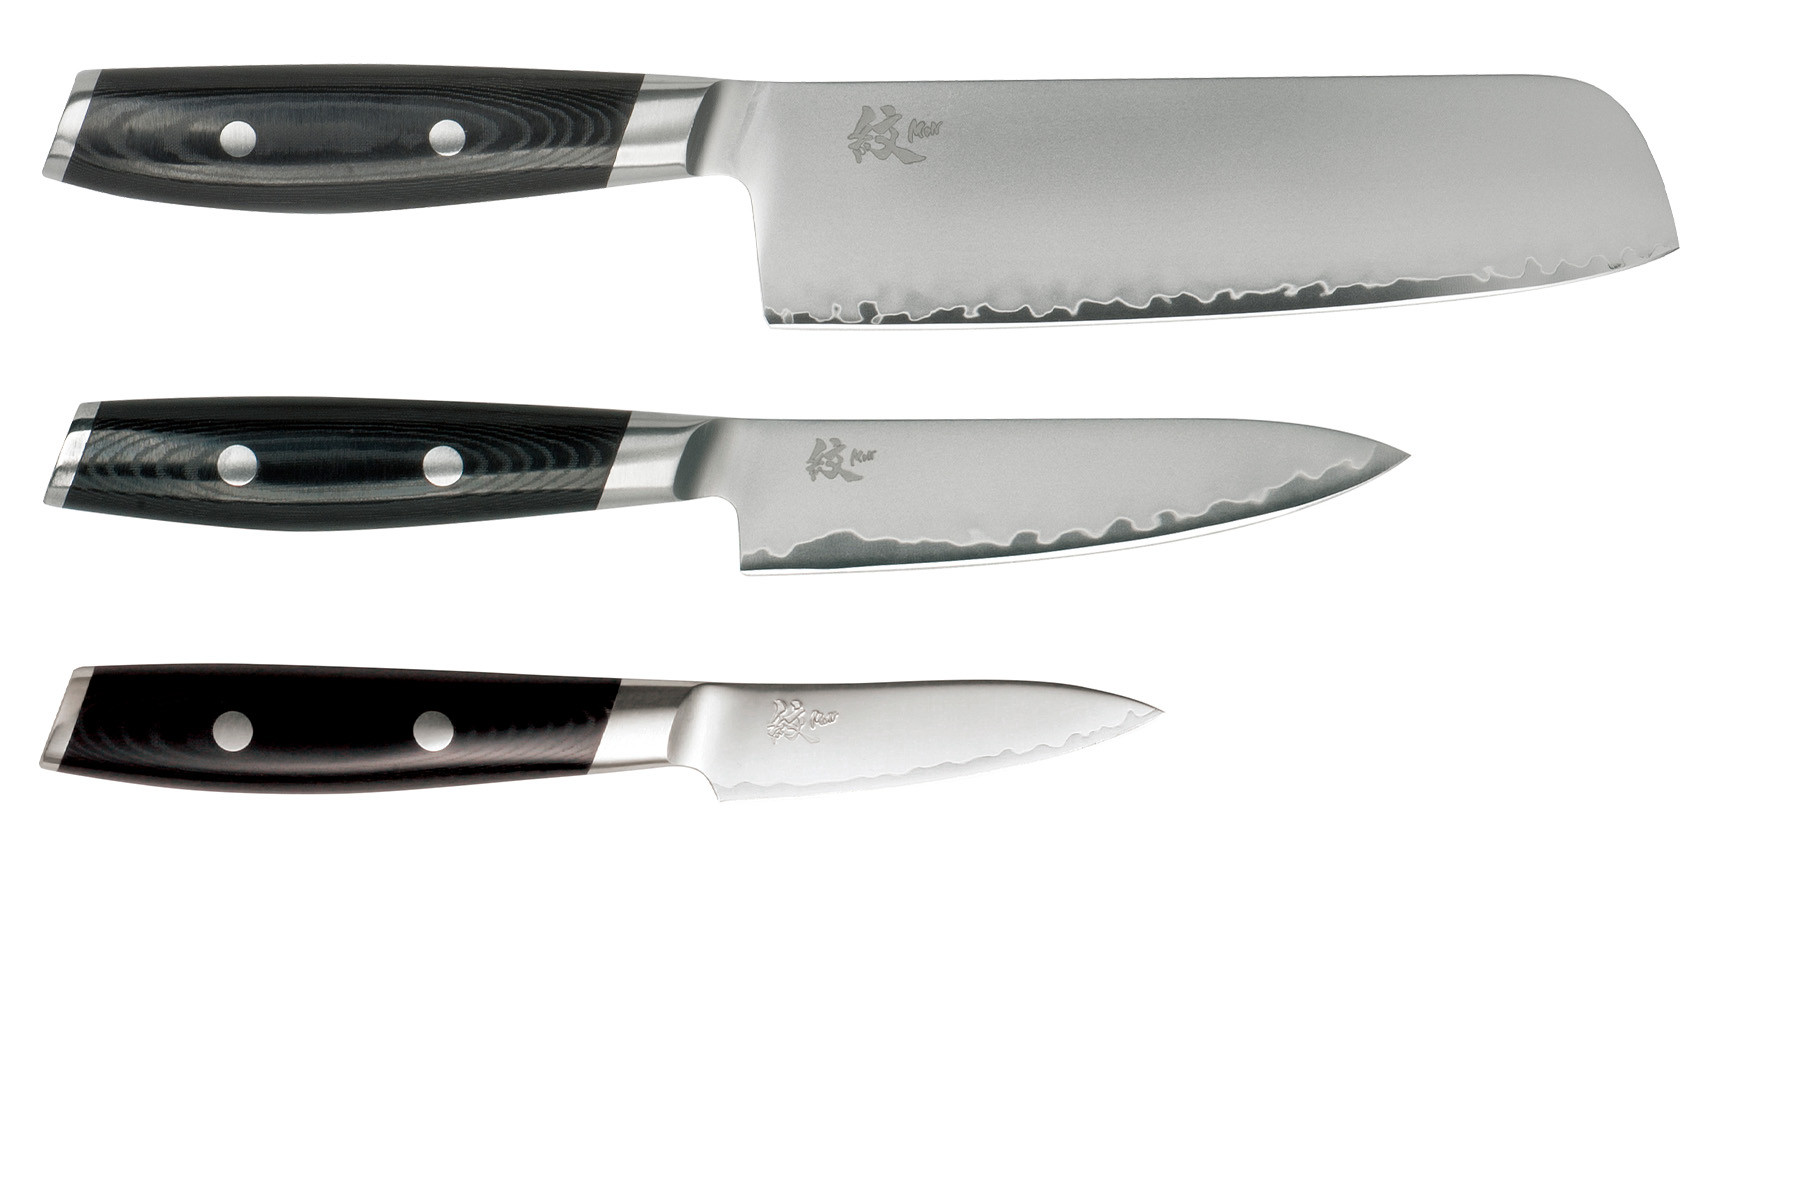 Set de 3 couteaux japonais Yaxell Mon - Forme vegan